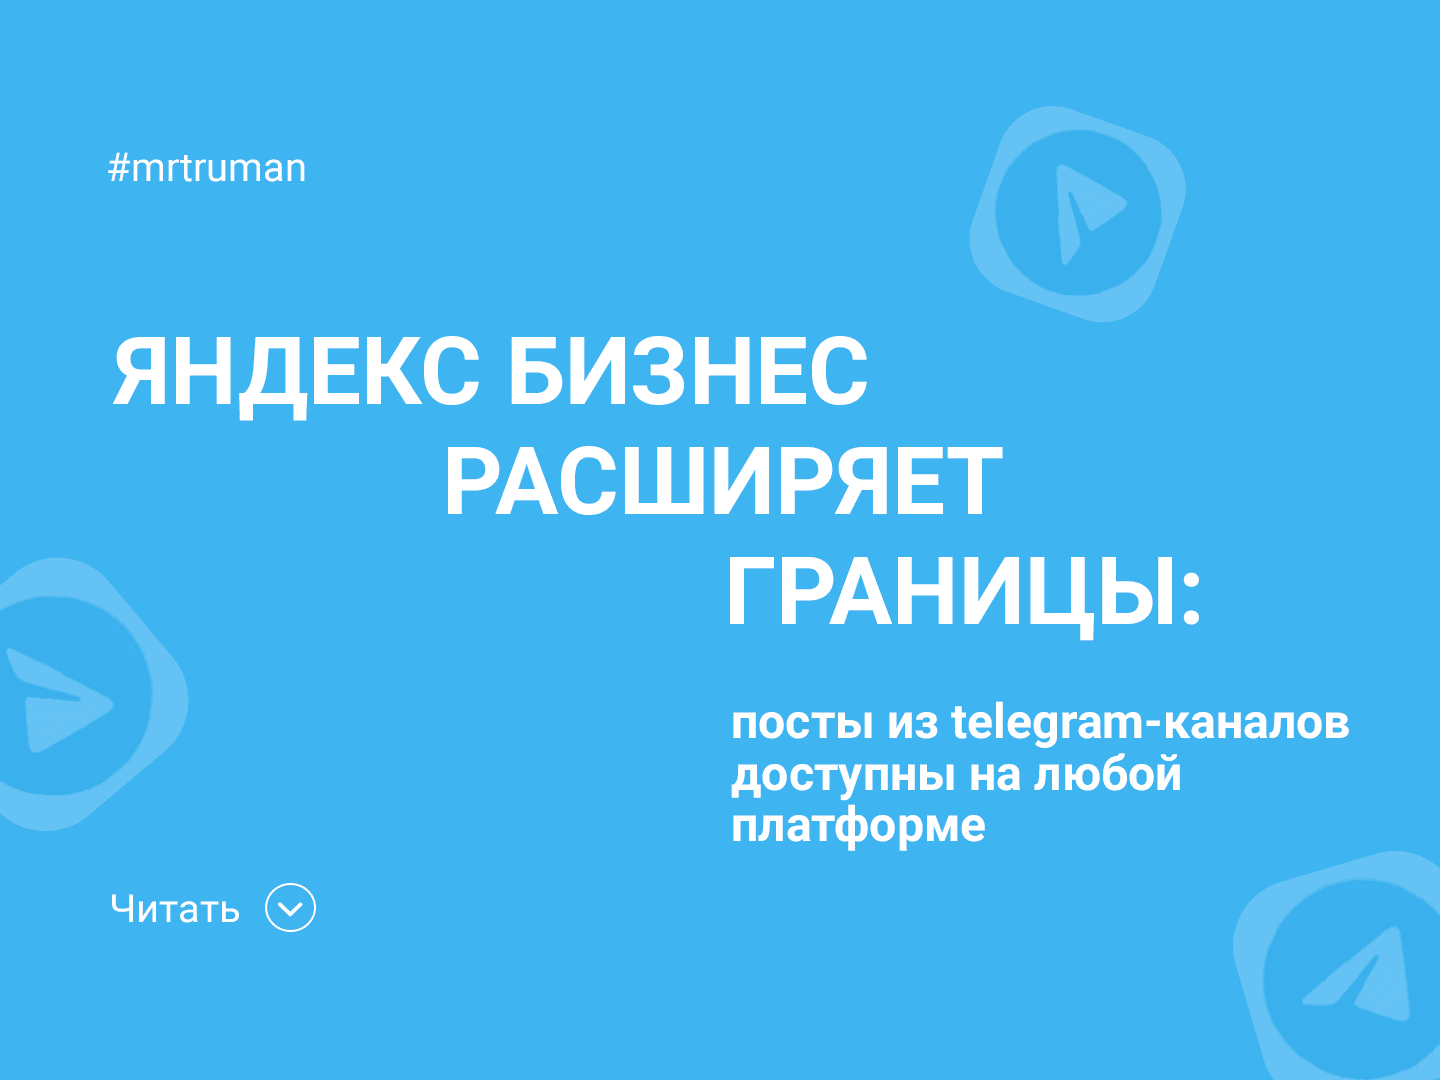 Посты из Telegram-каналов можно рекламировать по всему интернету с Яндекс Бизнесом